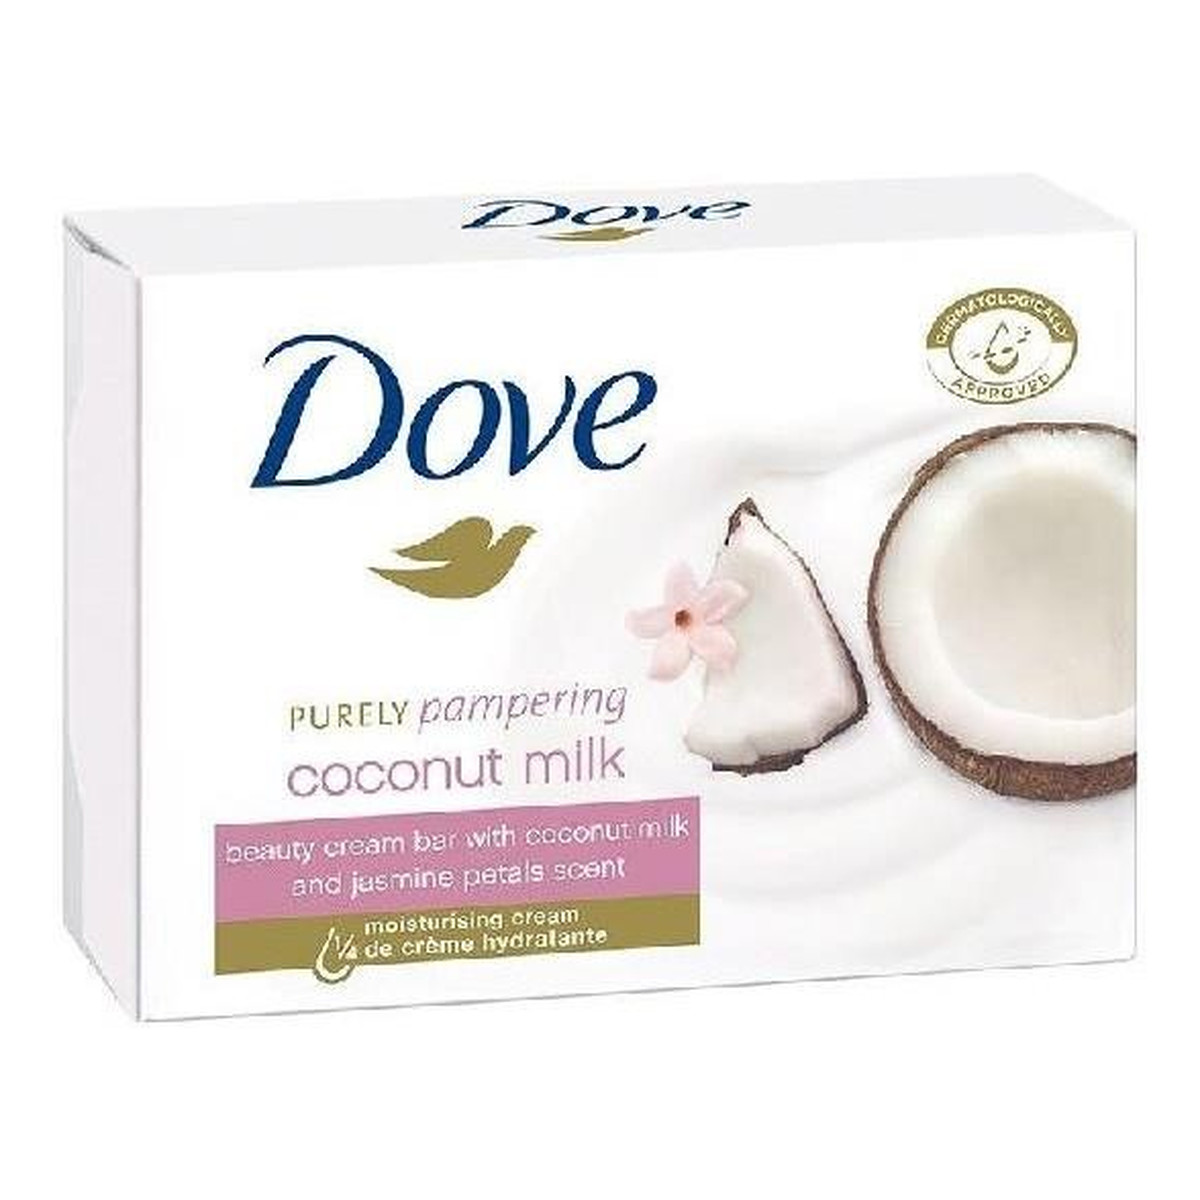 Dove Purely Pampering Coconut Milk Kremowa Kostka Myjąca 100g